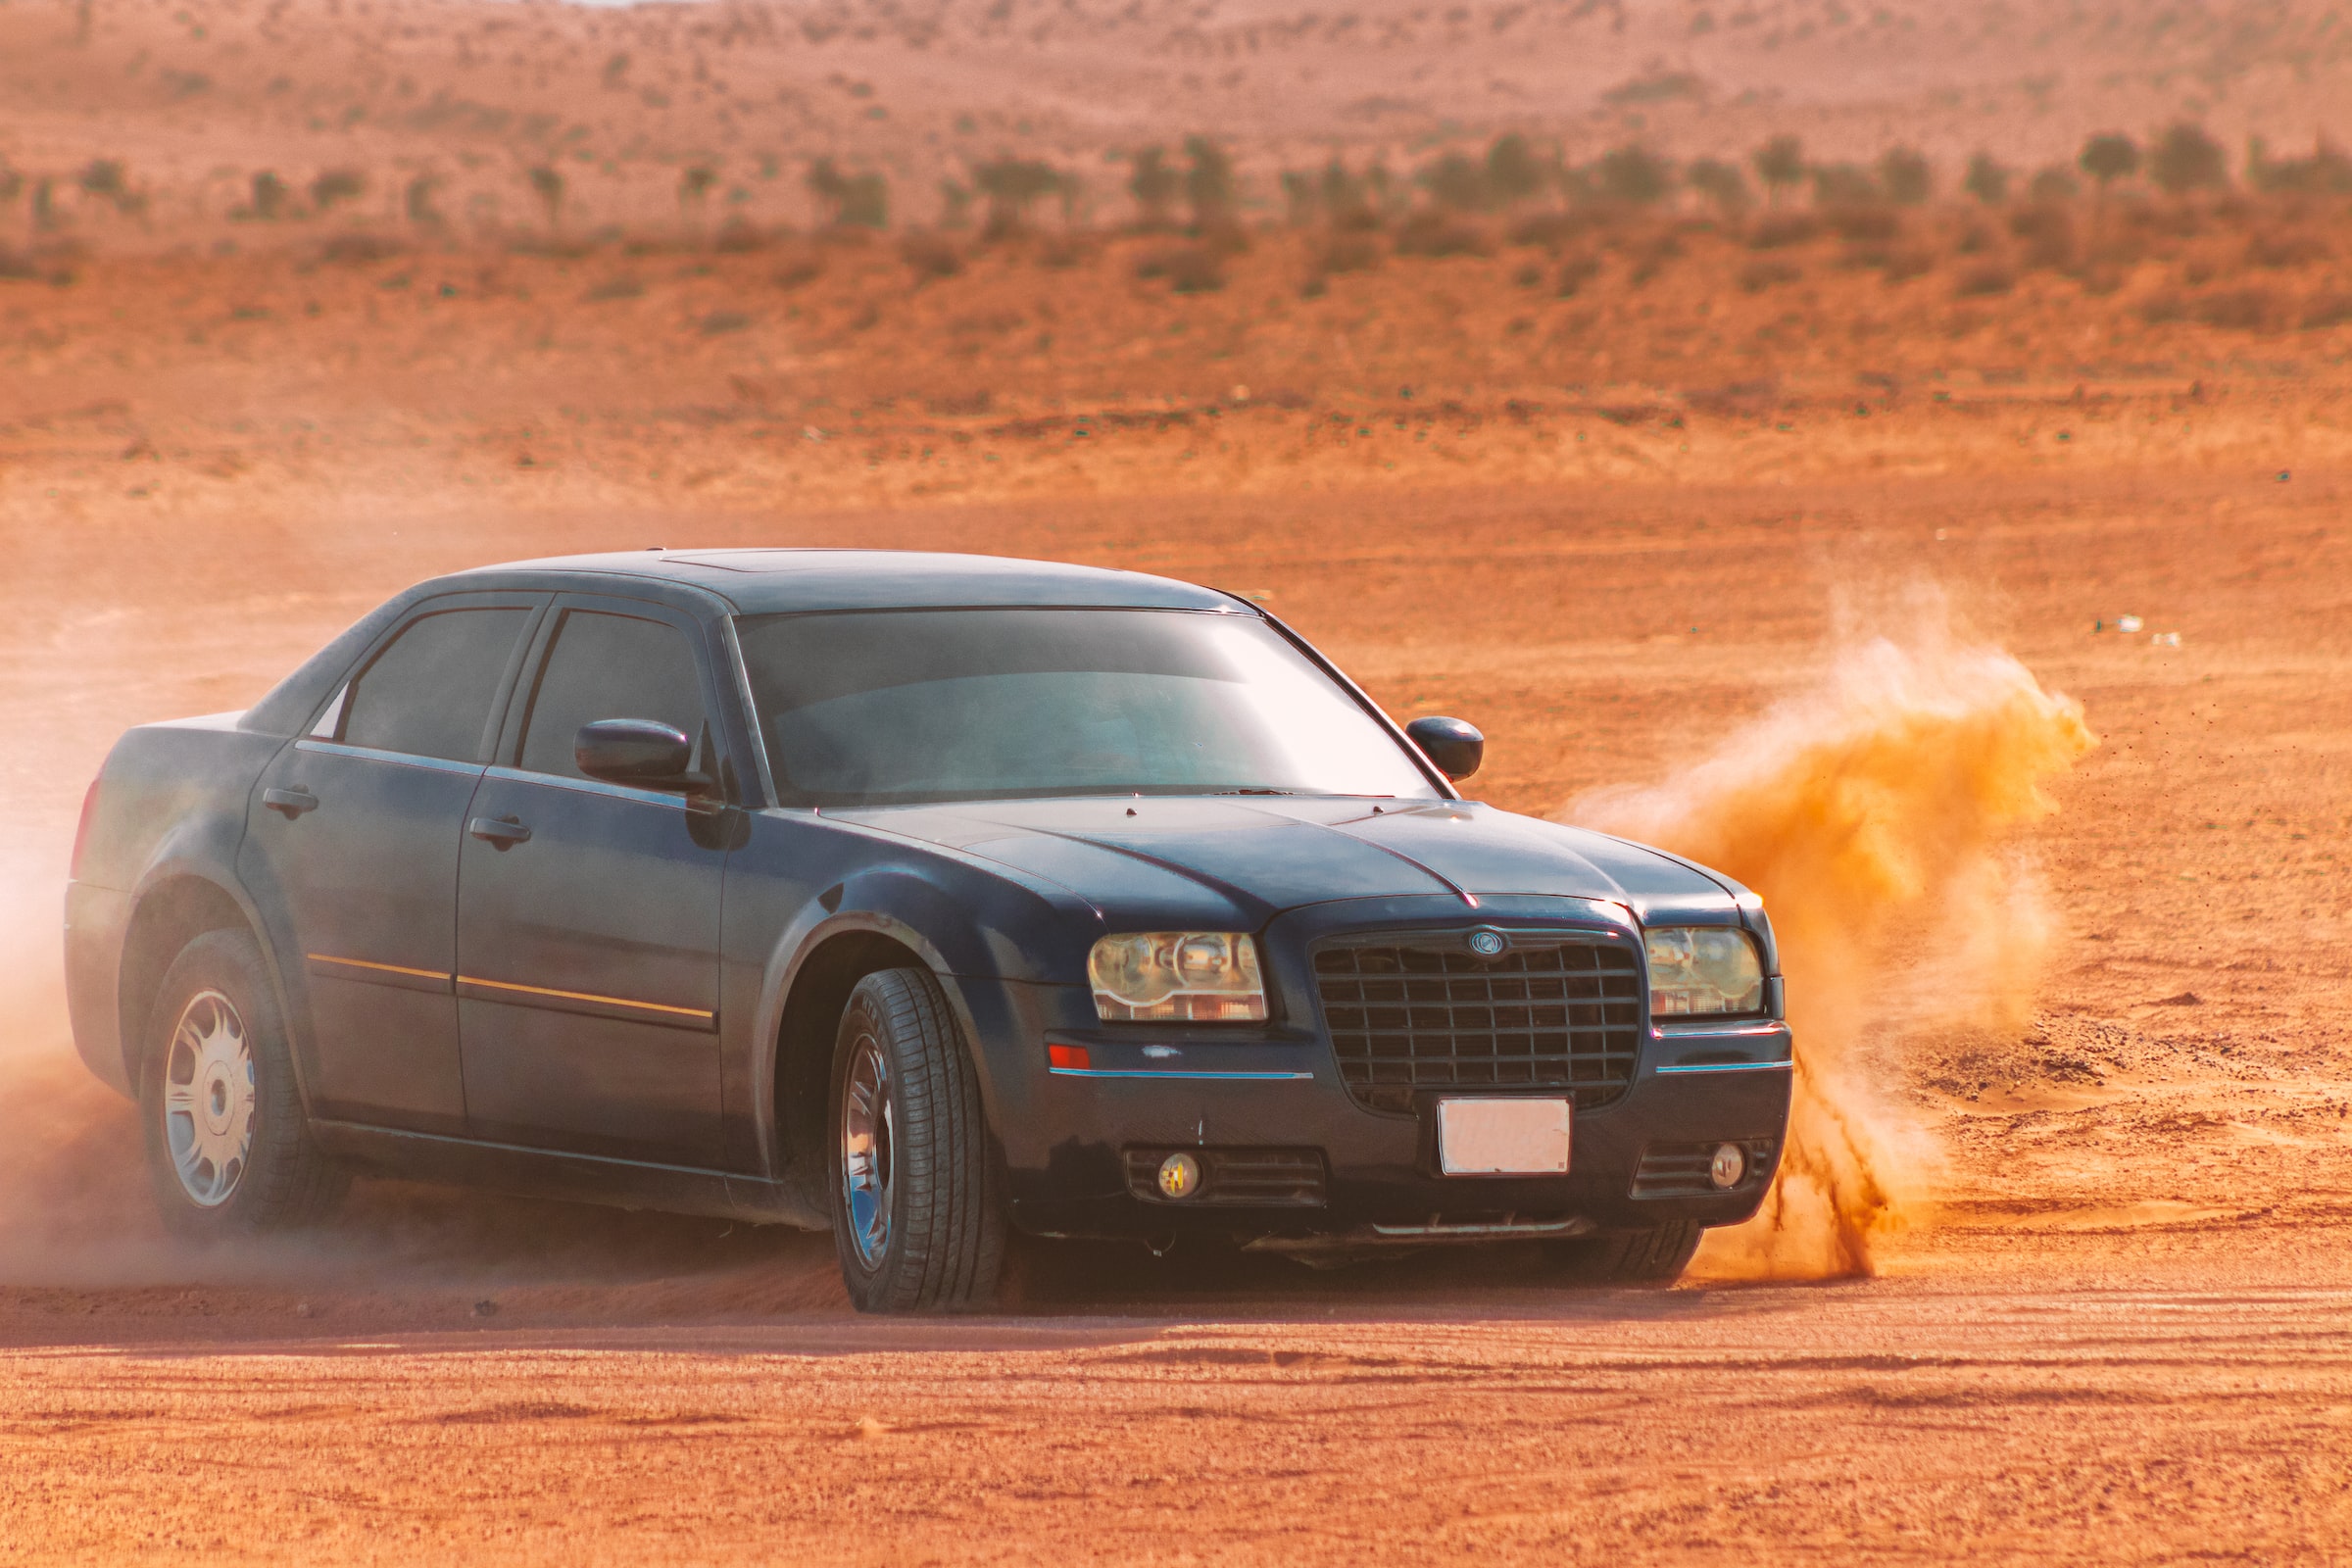 Luxury chrysler car in the desert